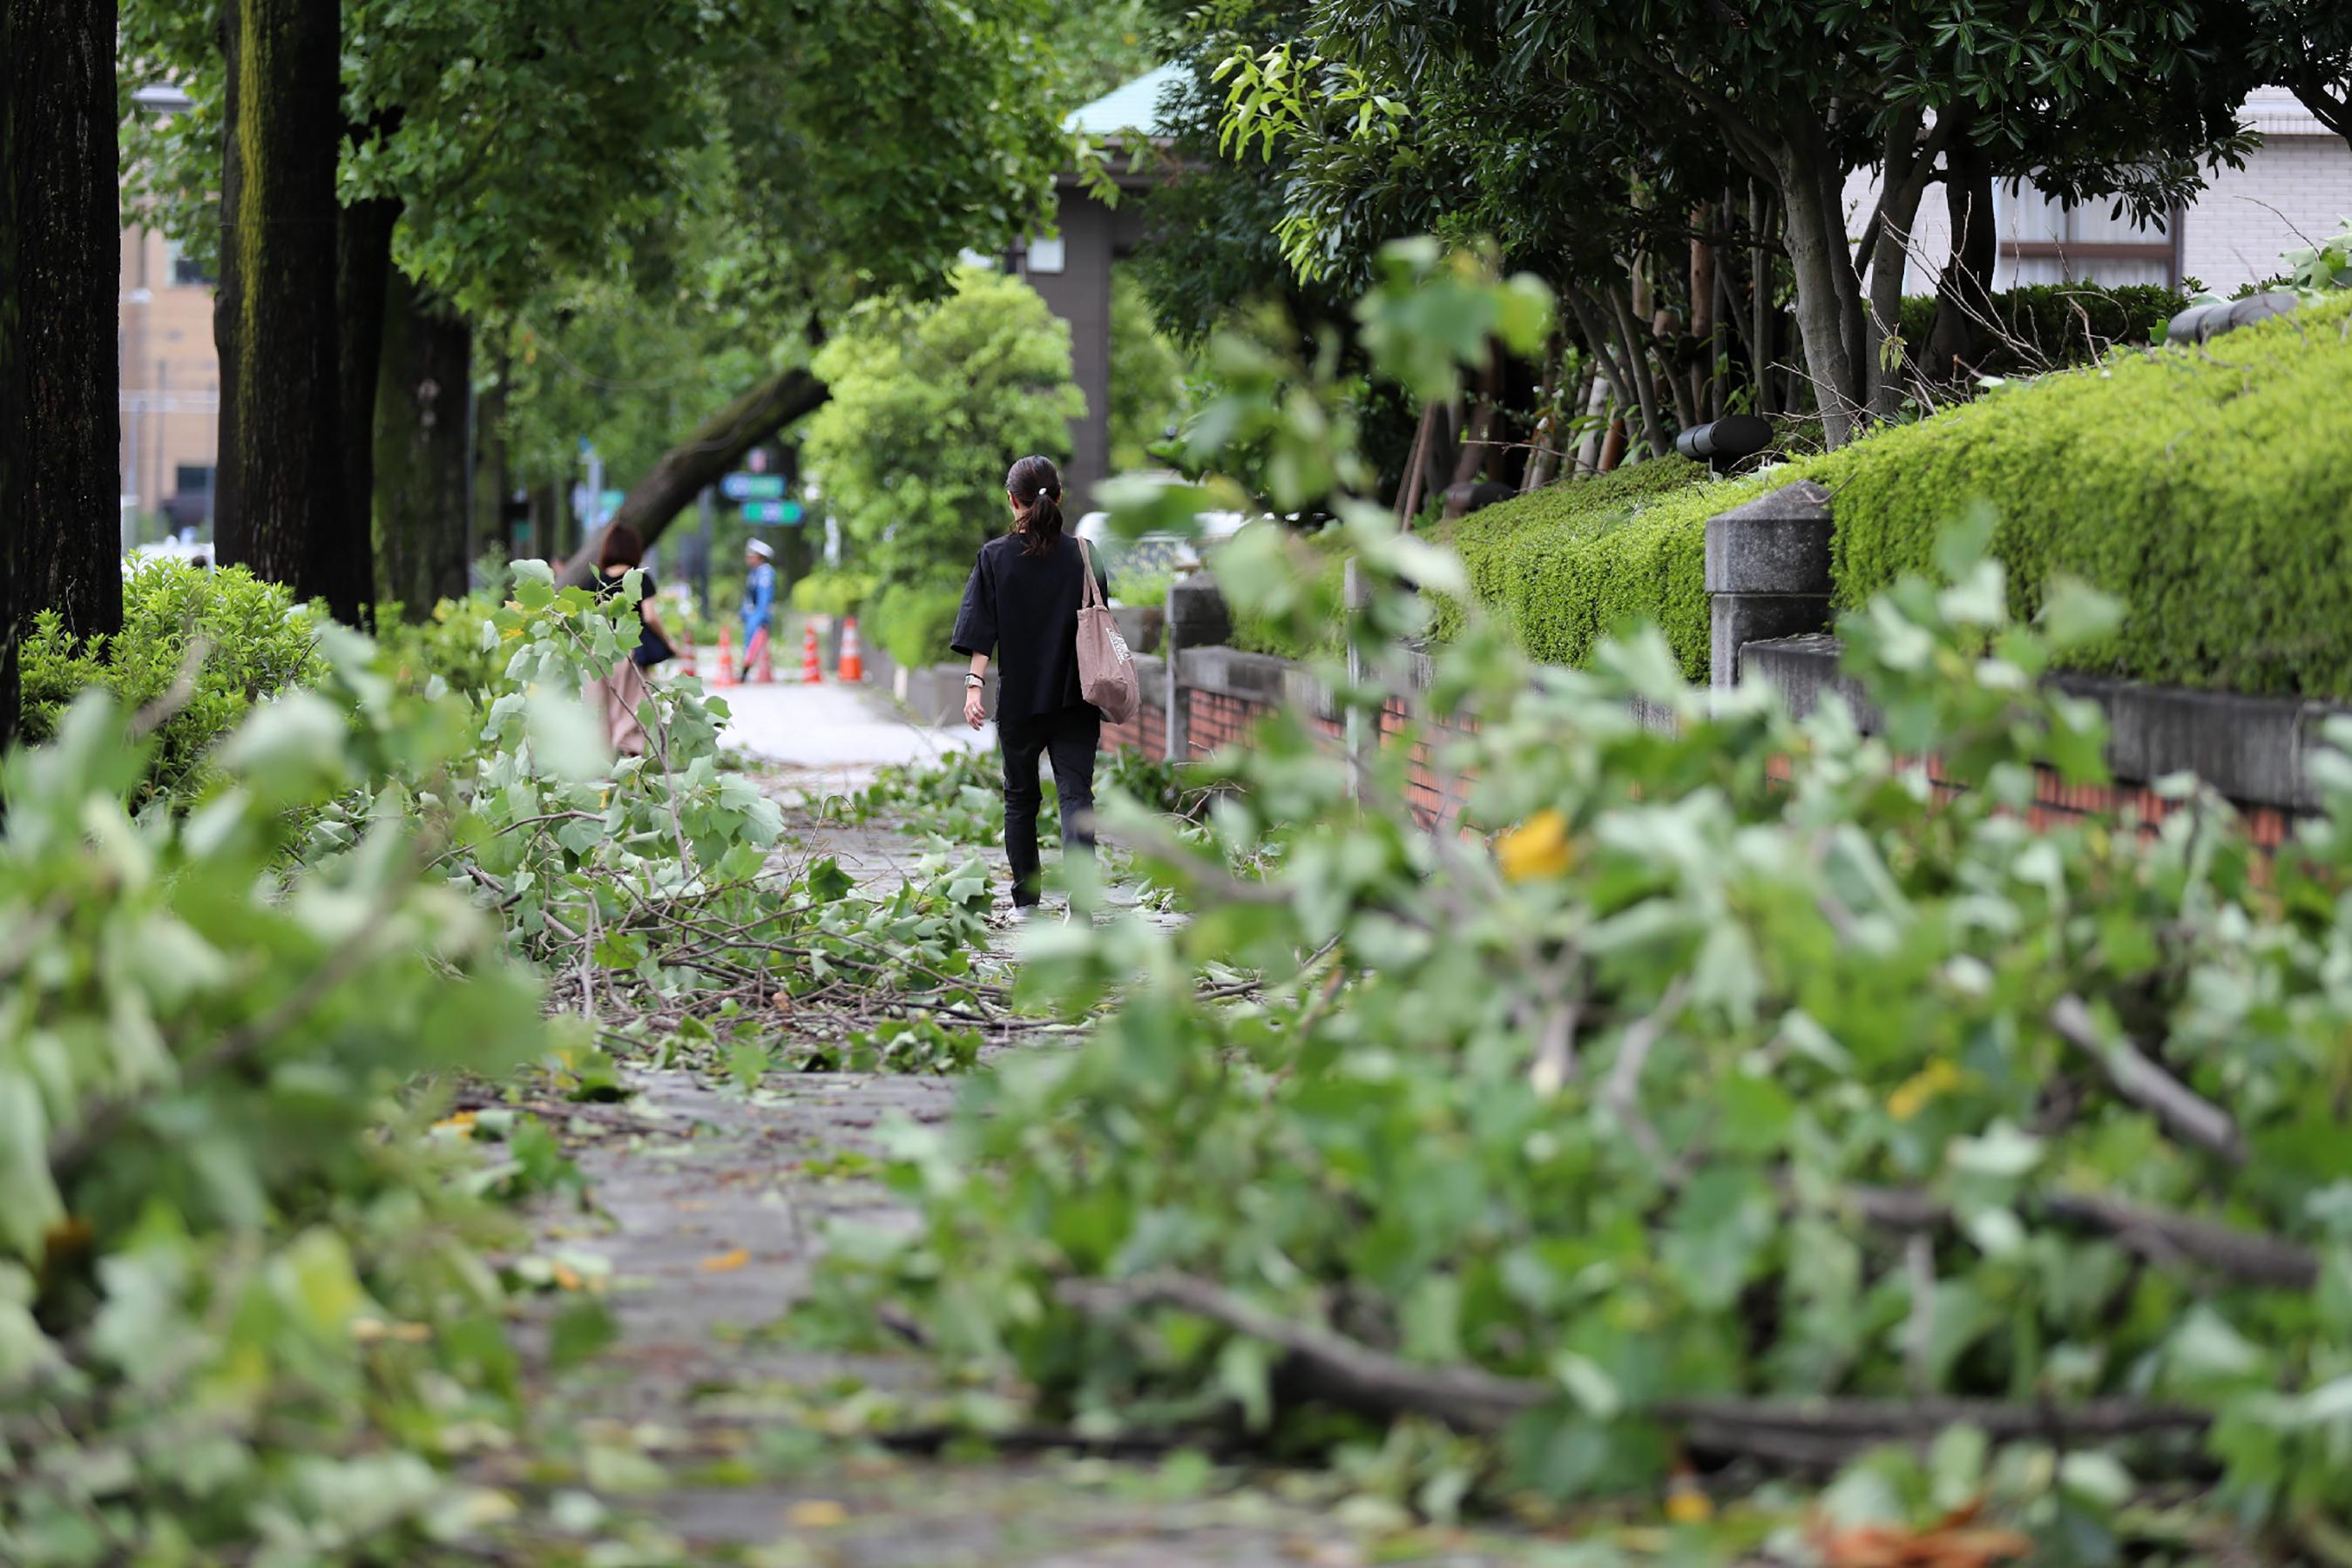 Jaka oluja paralizirala Tokio: Jedna osoba smrtno stradala